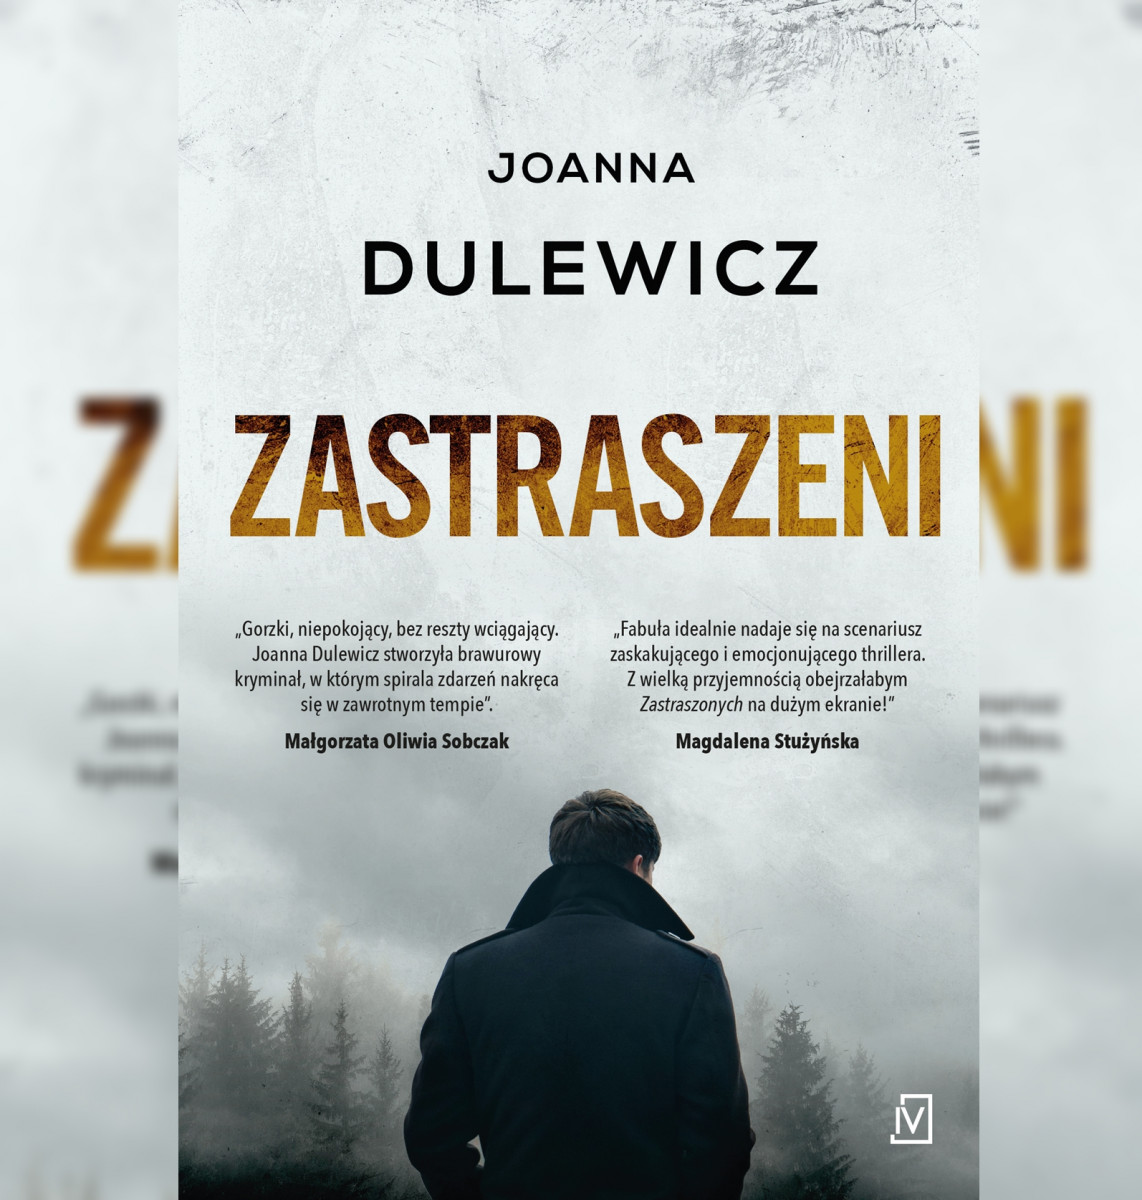 Książka: Joanna Dulewicz “Zastraszeni” [POLECAMY]